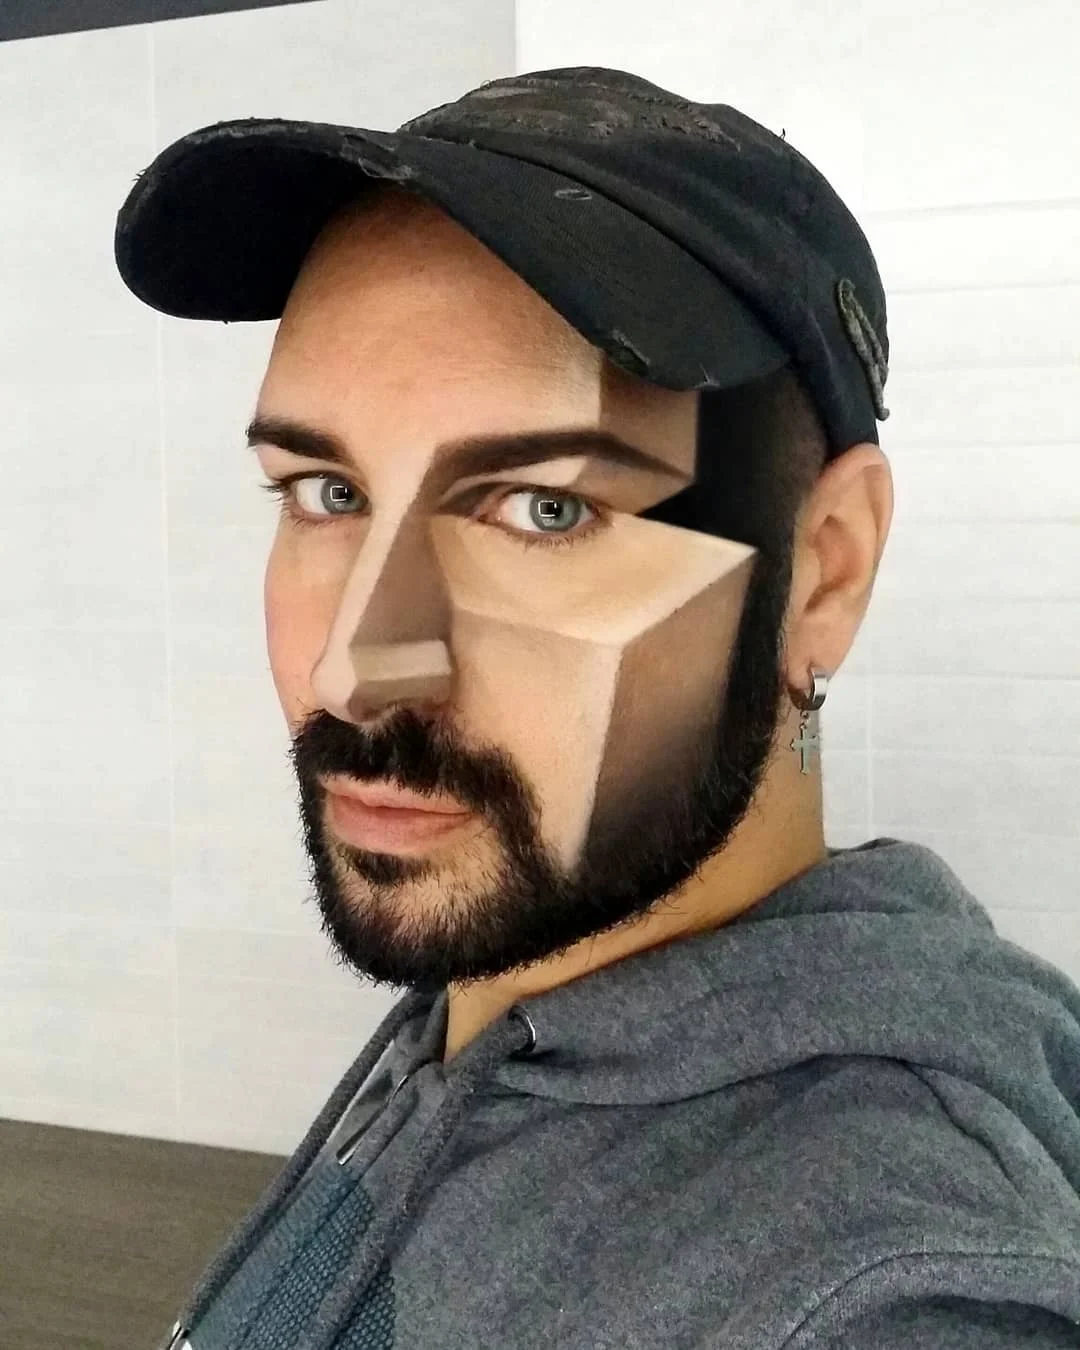 Мужчина делает нереальный макияж, который похож на оптическую иллюзию - фото 427342